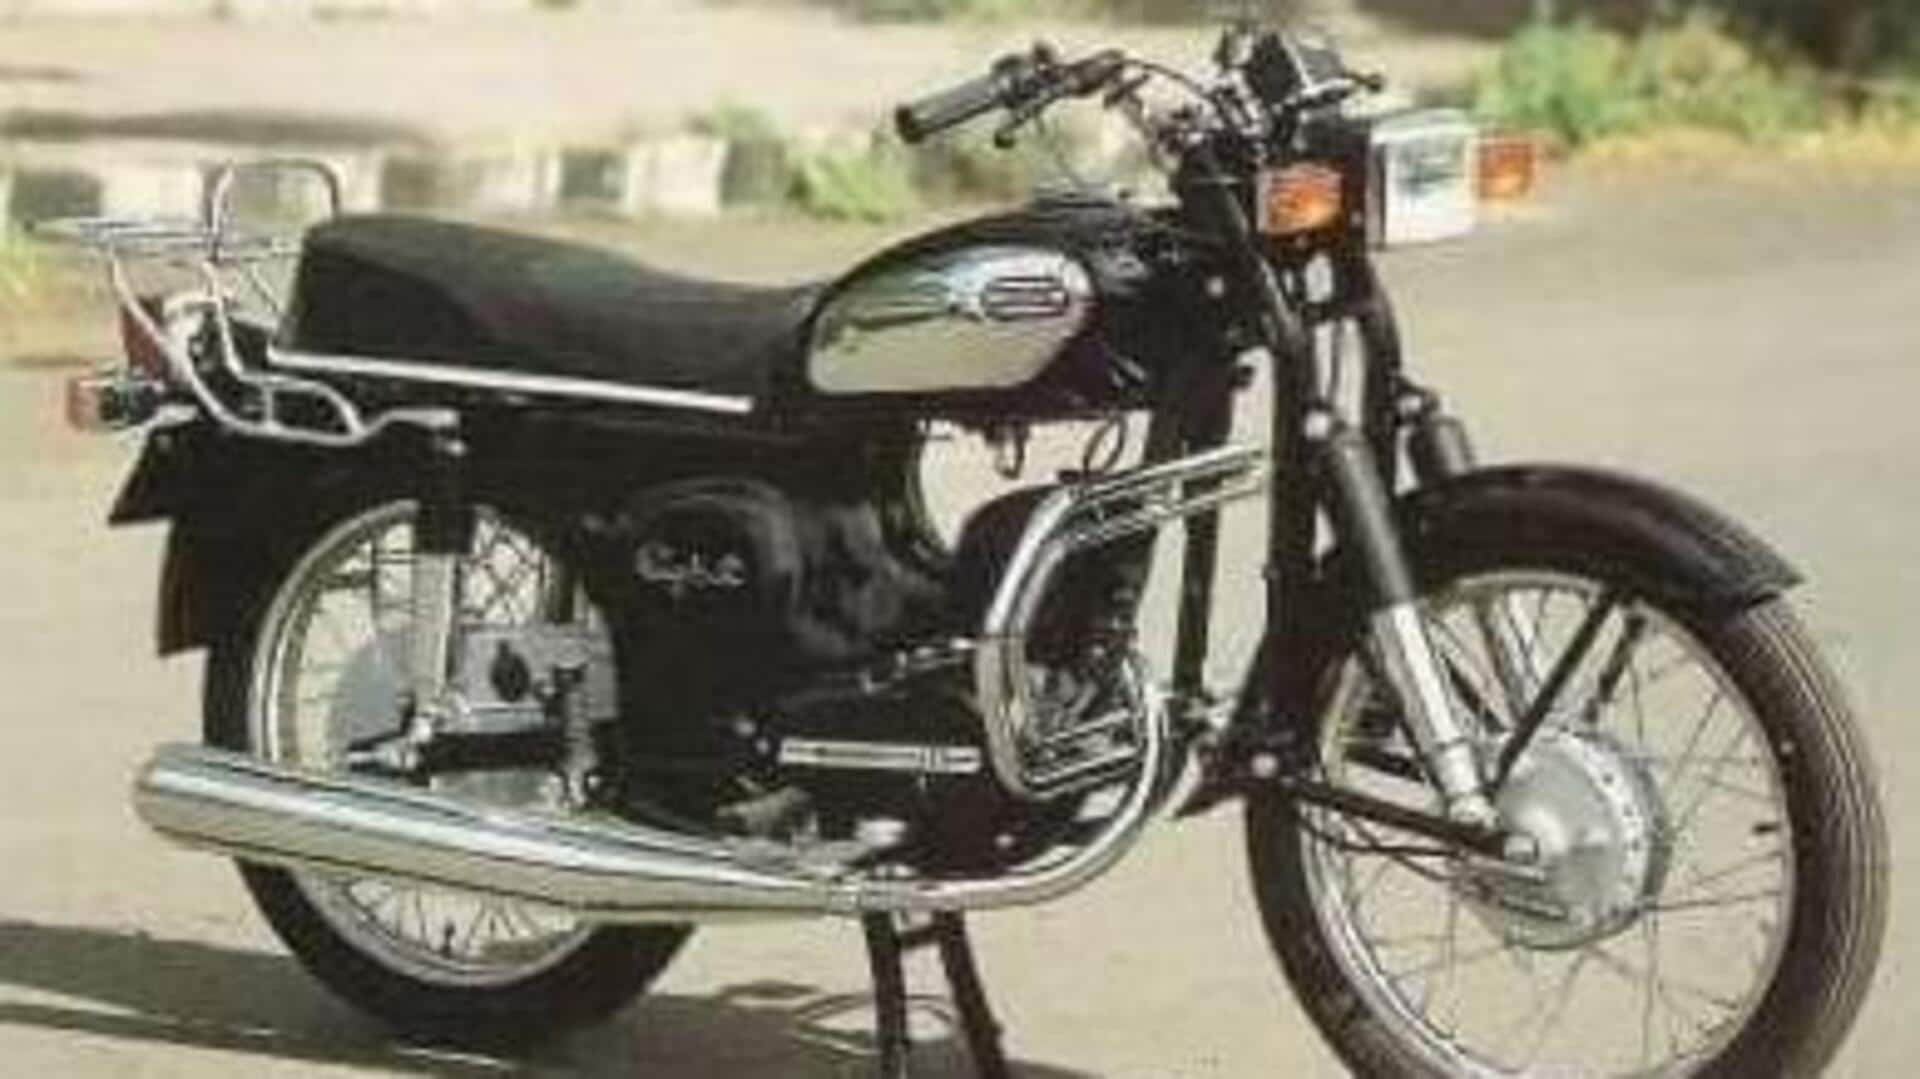 आइकॉनिक बाइक: 2 दशकों तक राजदूत बाइक रही थी शानदार और जानदार सवारी 